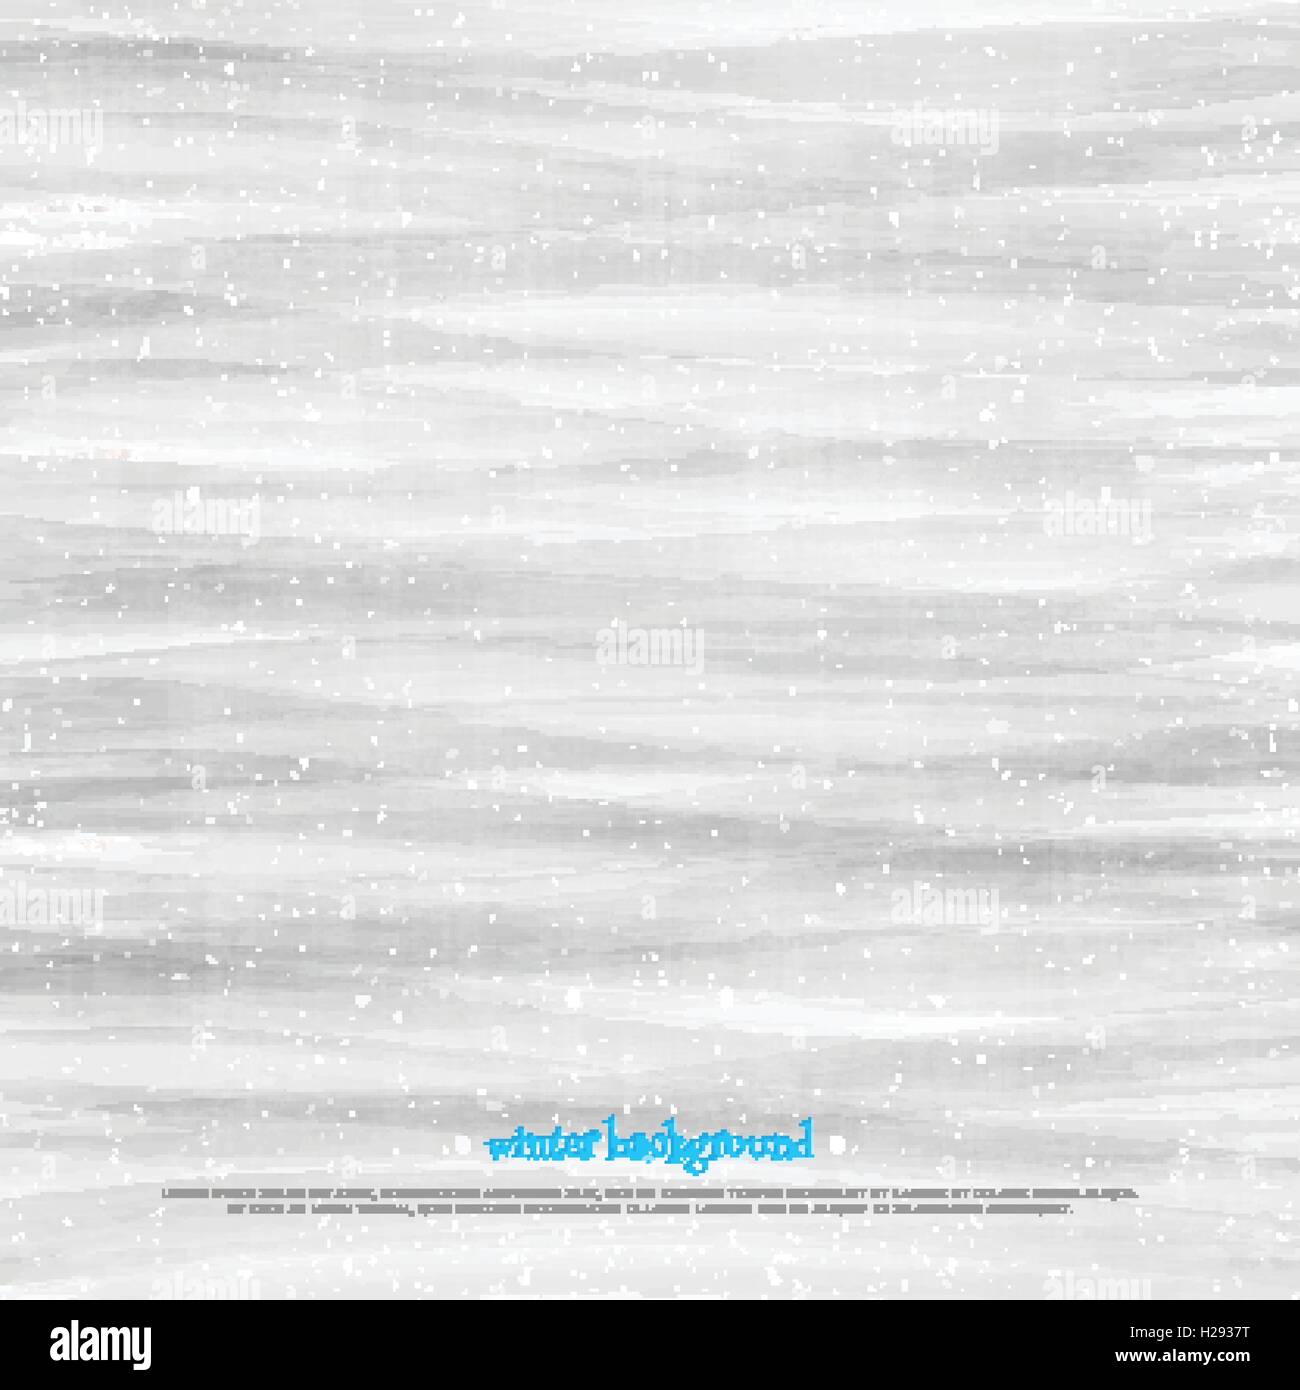 Xmas wallpaper con fiocchi di neve ad acquerello su carta texture. grigio sfondo vettoriale design. Natale disegnati a mano sfondo rétro Illustrazione Vettoriale